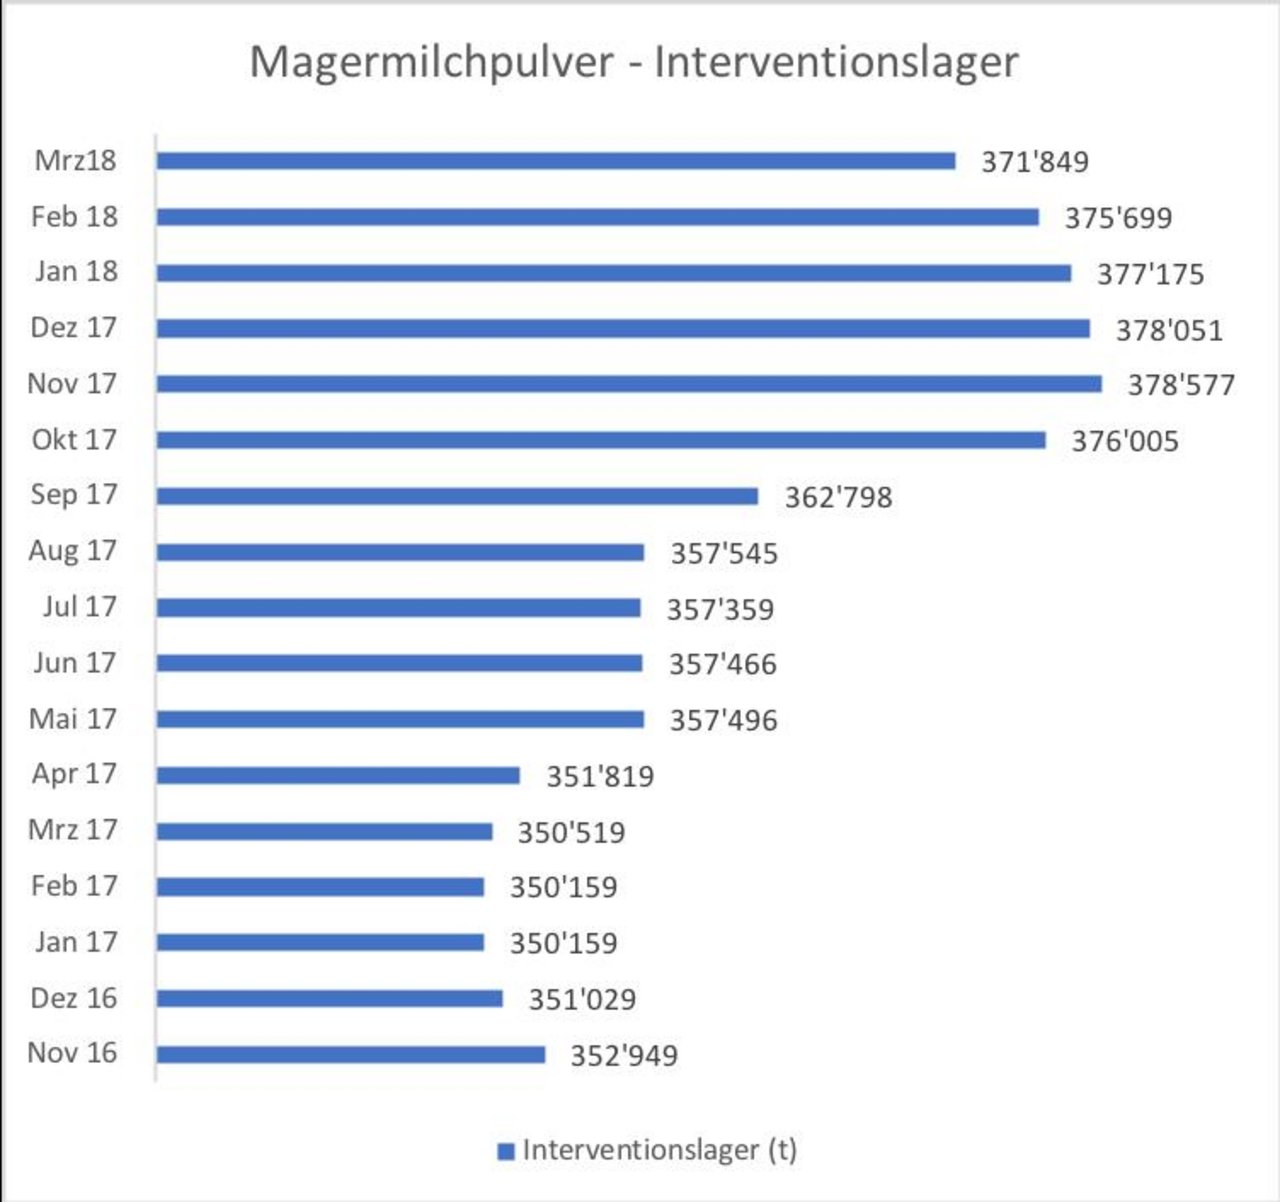 Die Magermilchpulverbestände in den Interventionslagern betrugen im März 2018 gut 371 000 Tonnen...